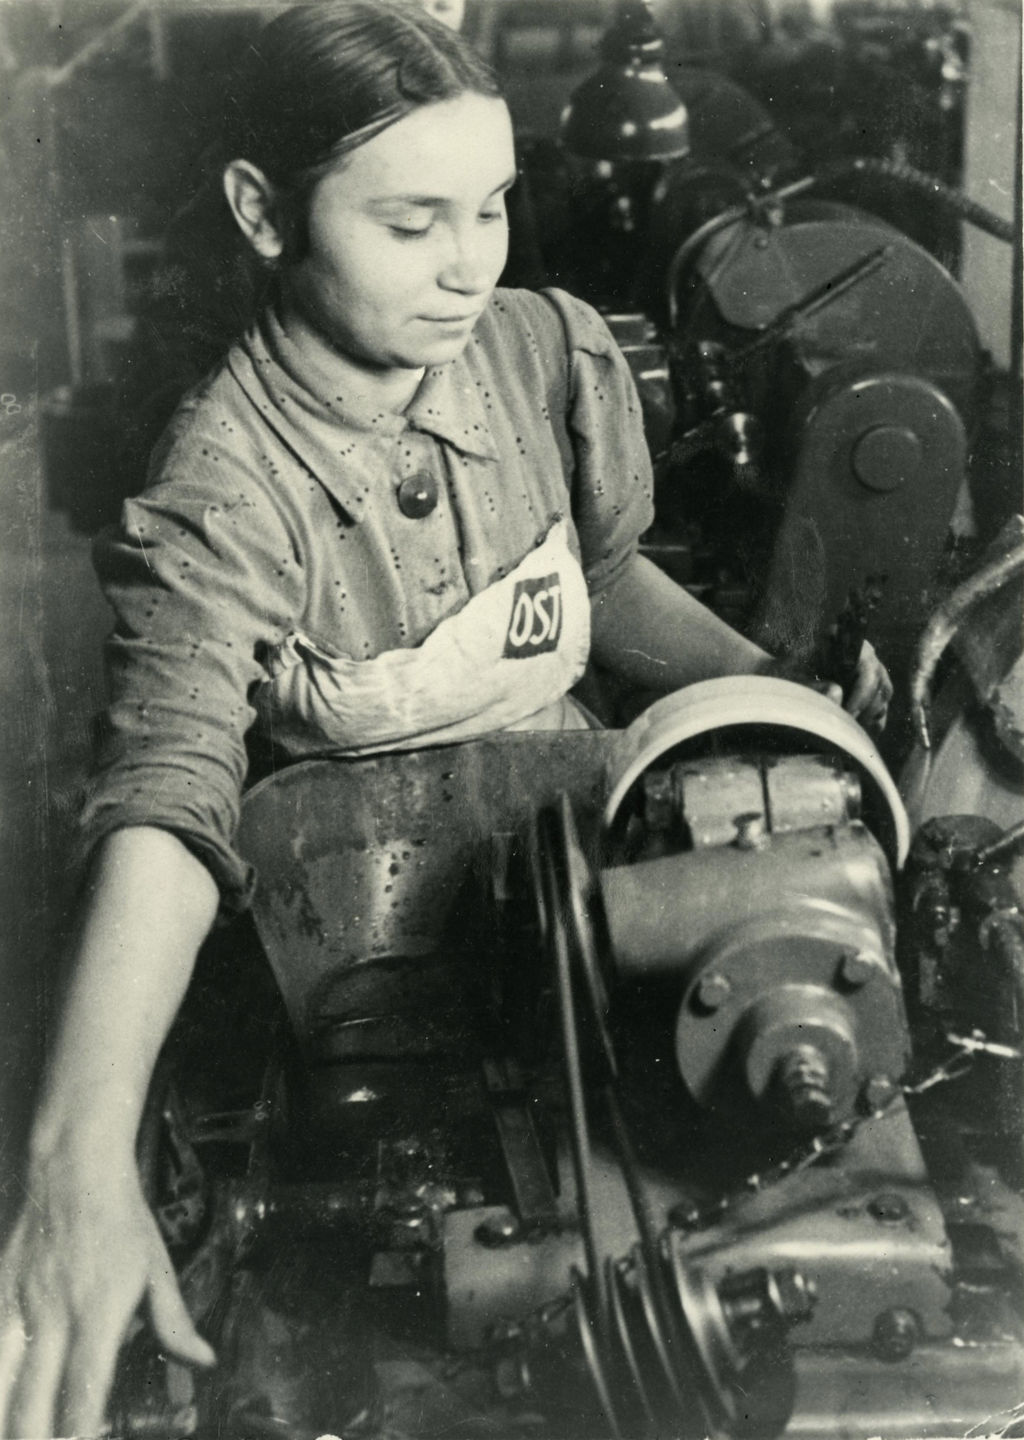 Exponat: Foto: "Ostarbeiterin" in einem deutschen Betrieb, 1941/1945